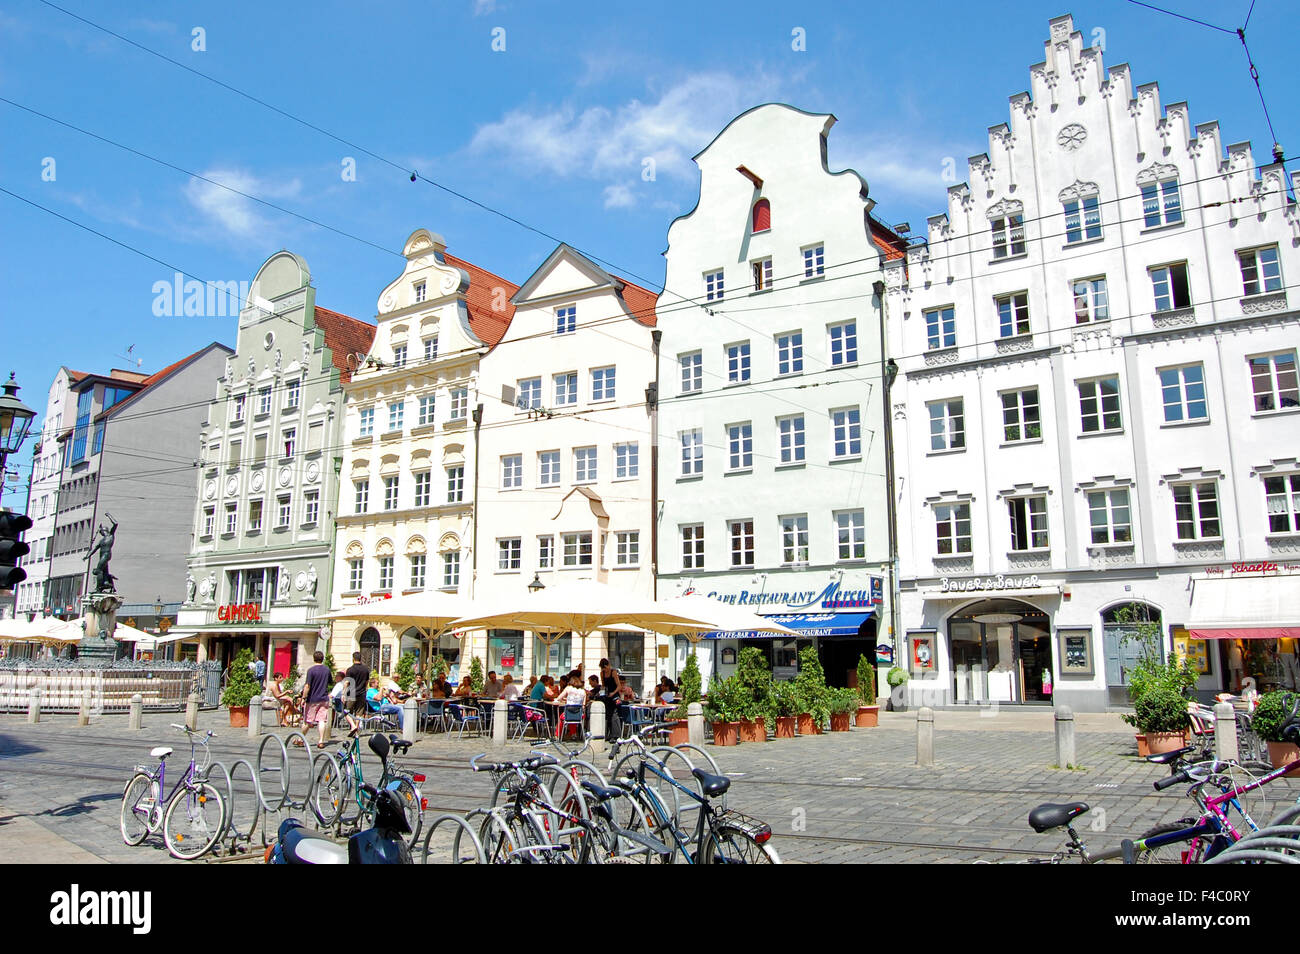 Ein Café im Freien, Häuser und Geschäfte entlang der Maximilianstraße in Augsburg, Deutschland Stockfoto